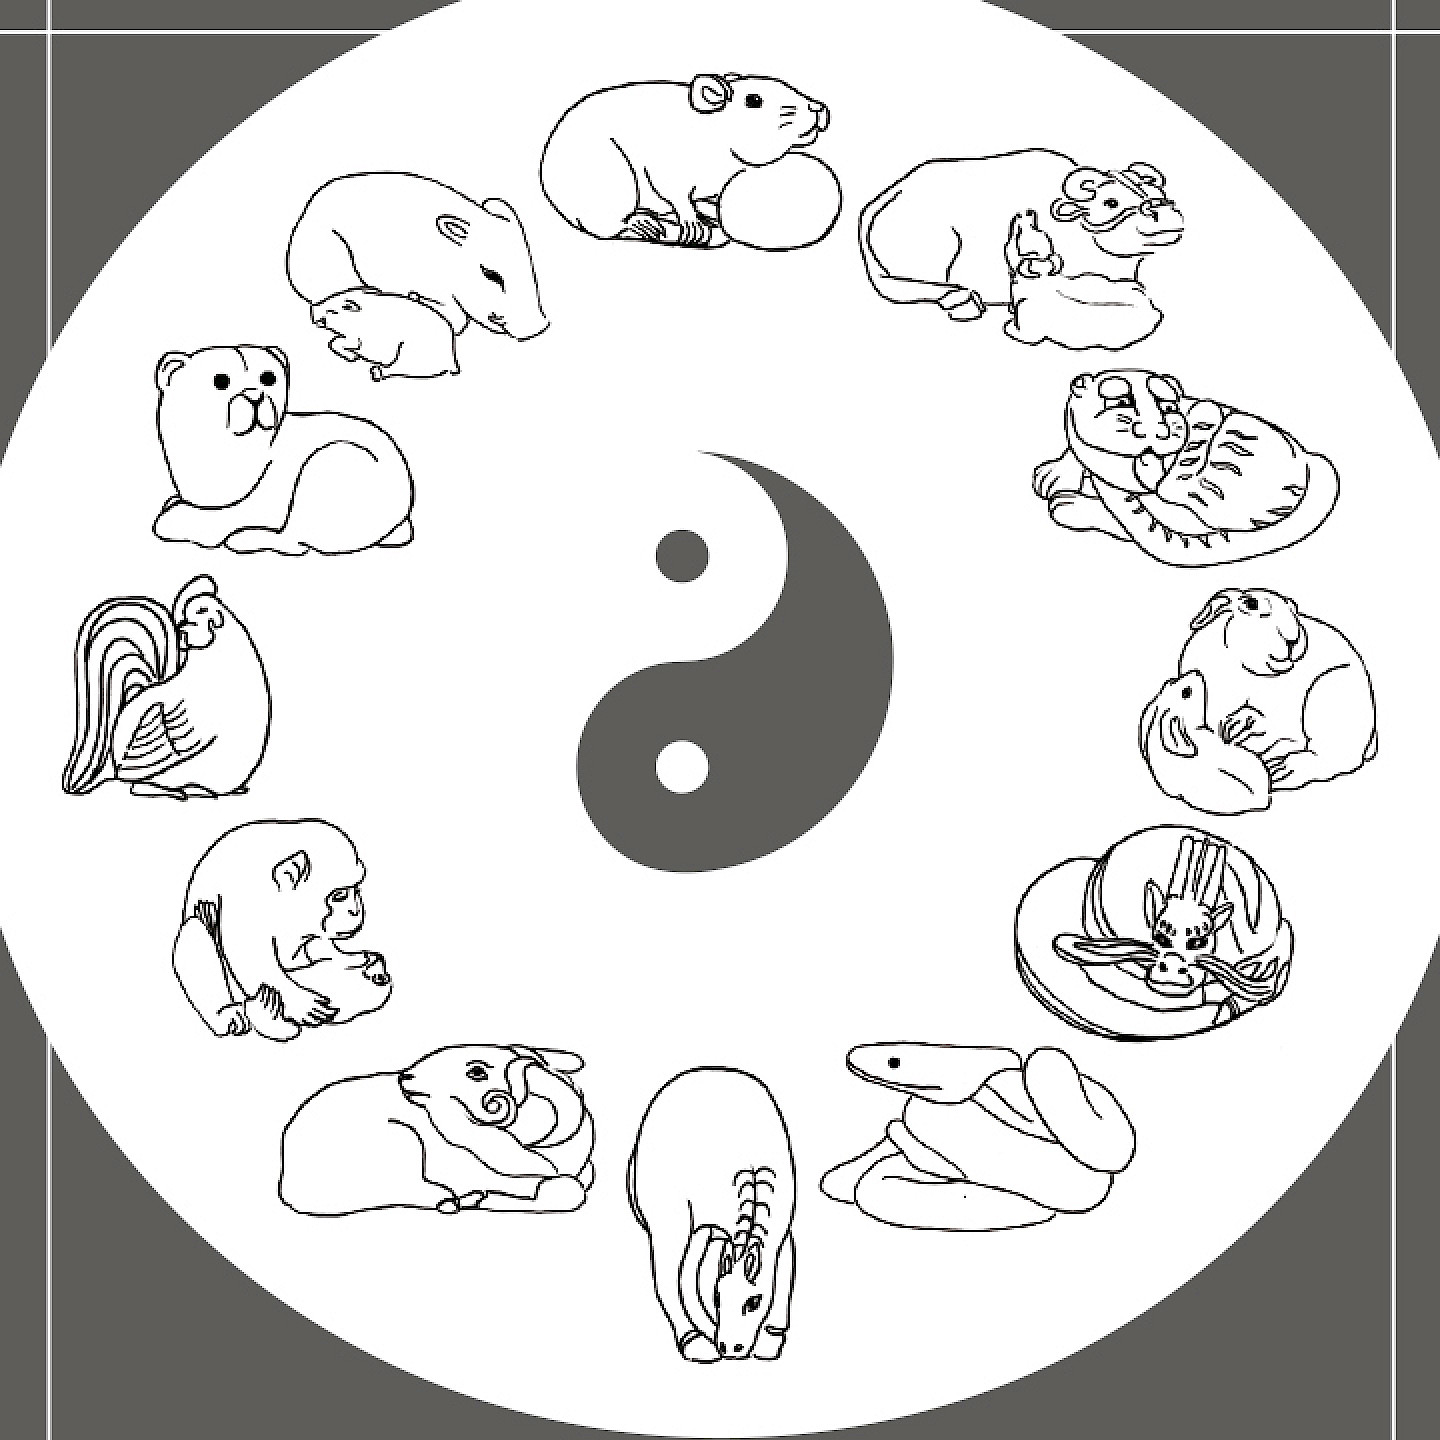 Der buddhistische Zodiac – die 12 Tiere und ihre Bedeutung